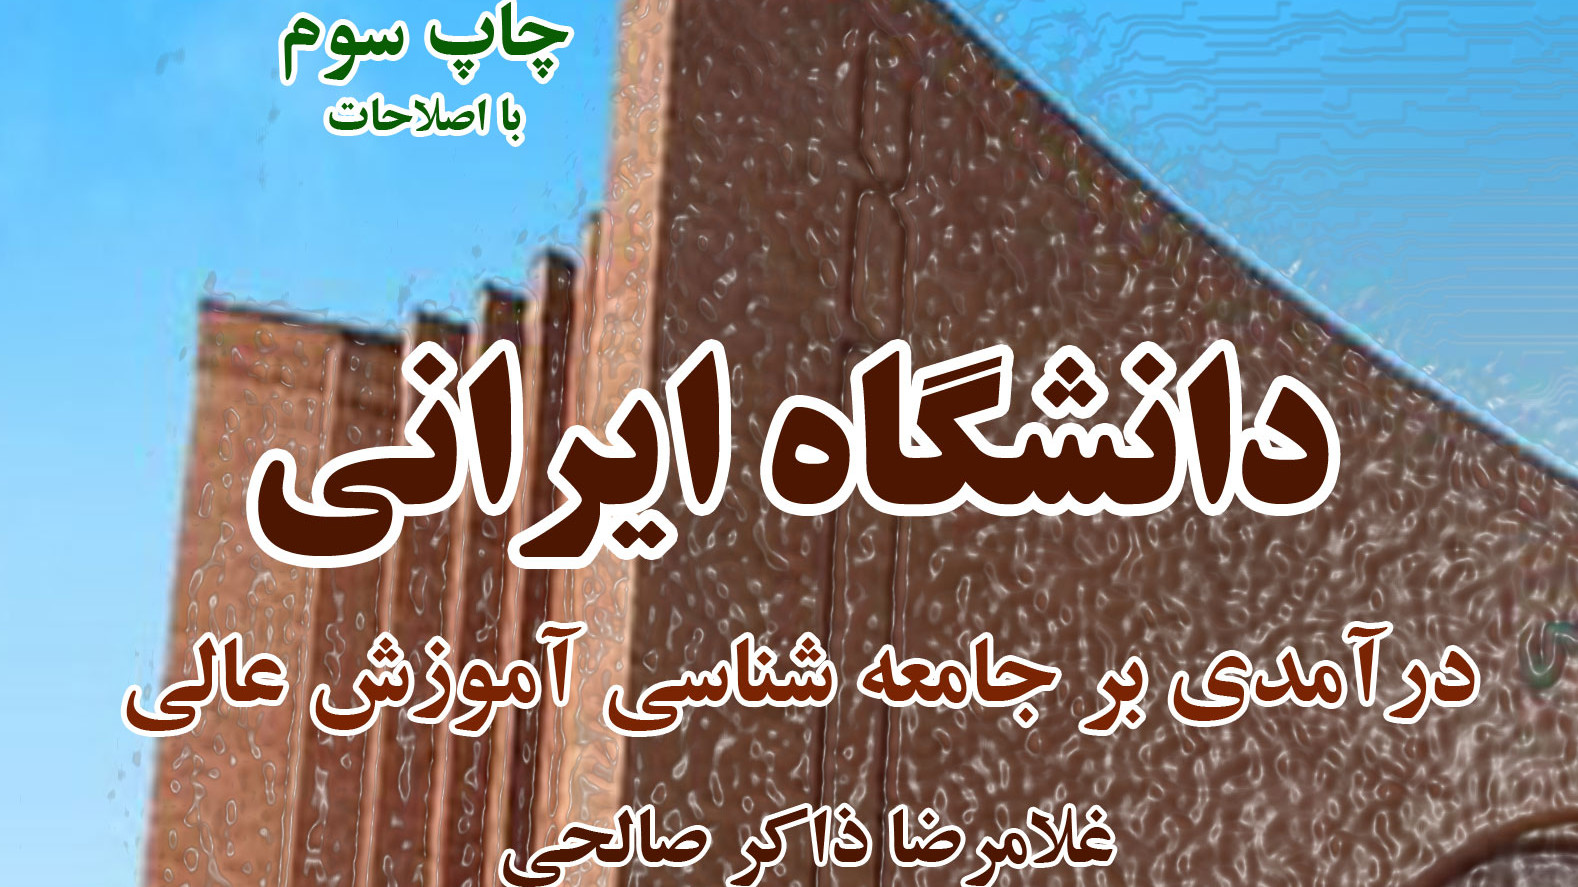 رونمایی کتاب دانشگاه ایرانی اثر دکتر غلامرضا ذاکر صالحی